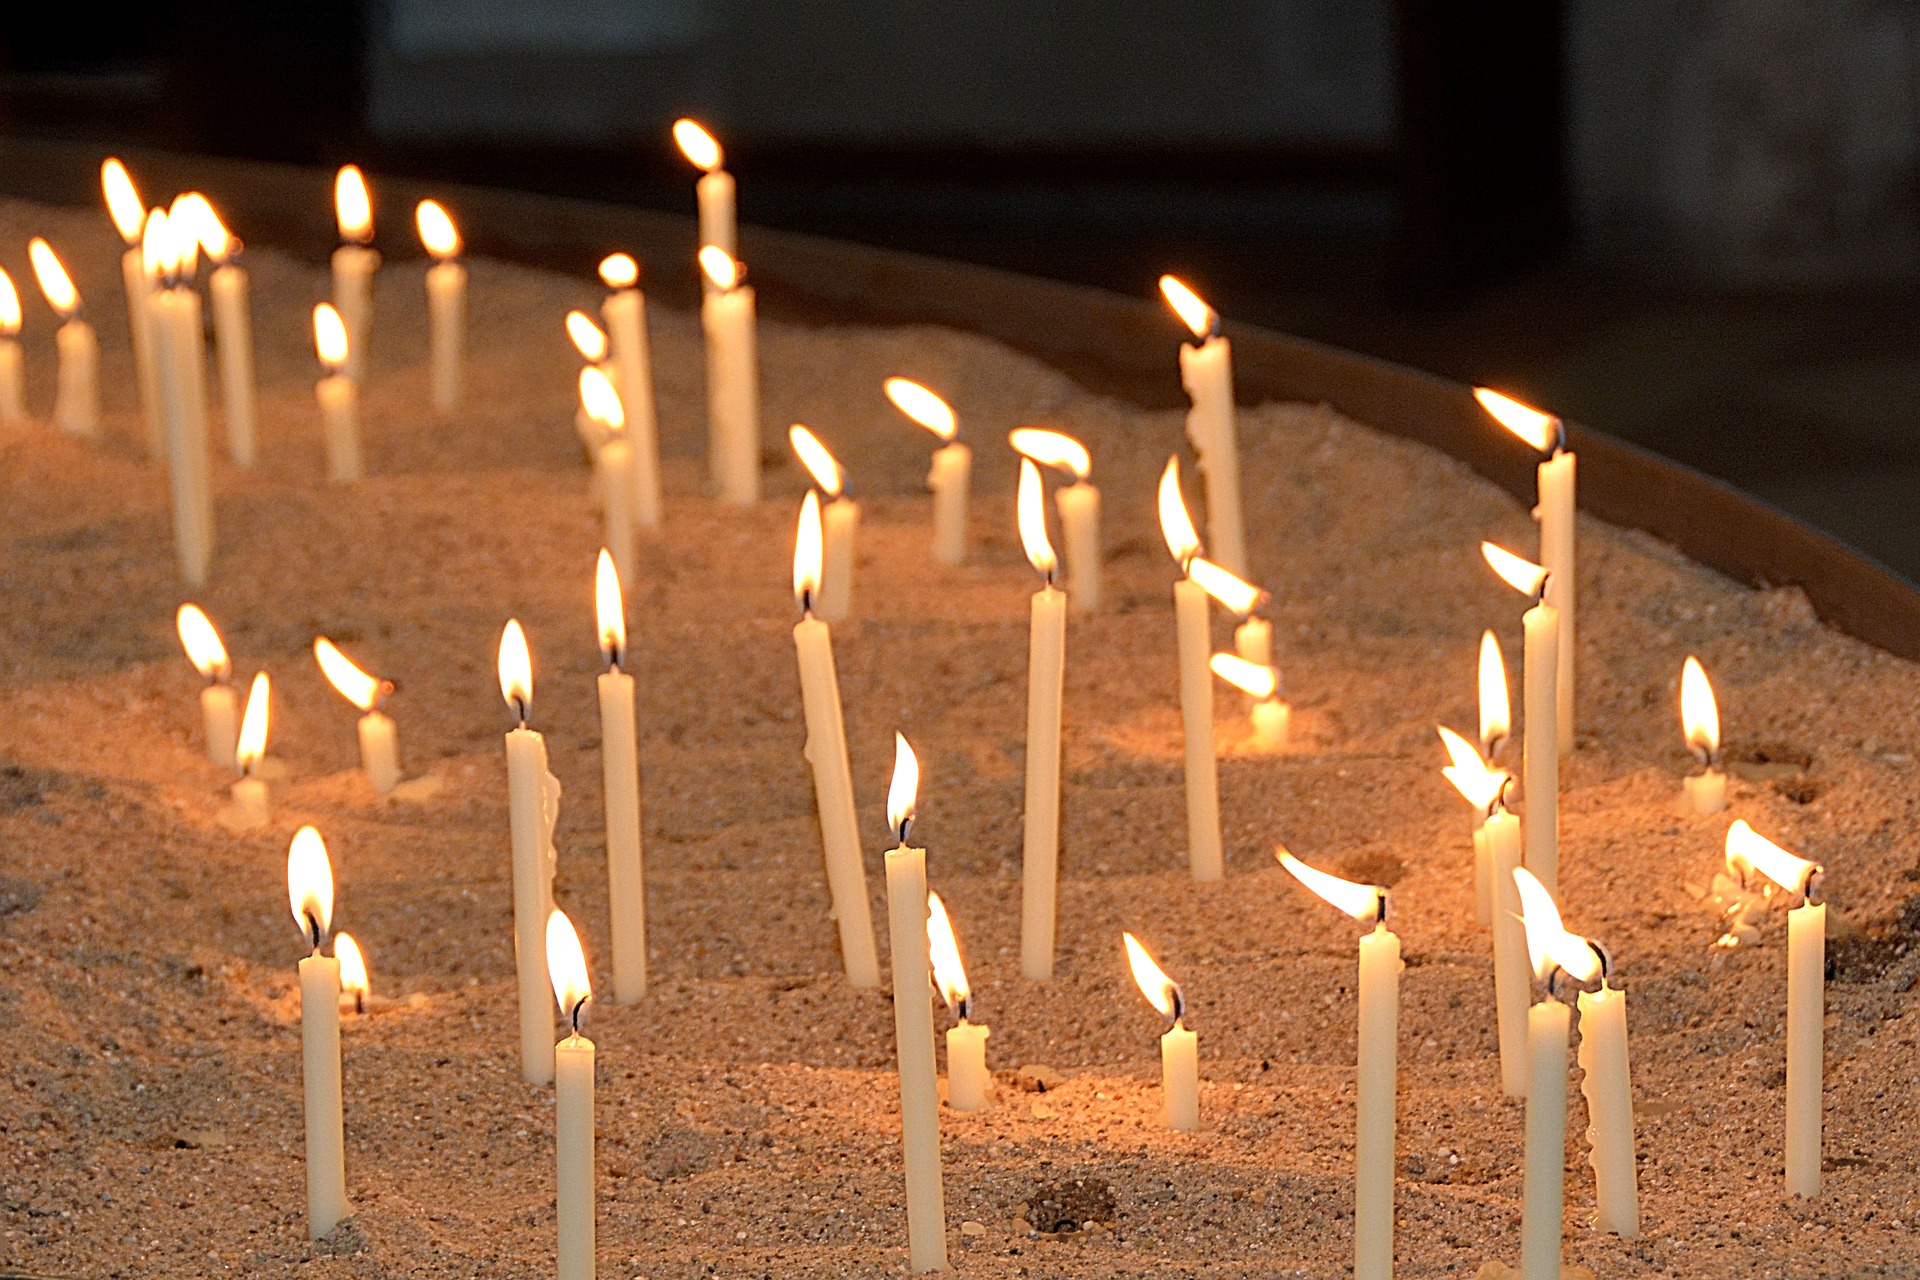 memorial-candles-2686150_1920 (c) annca, pixabay.com